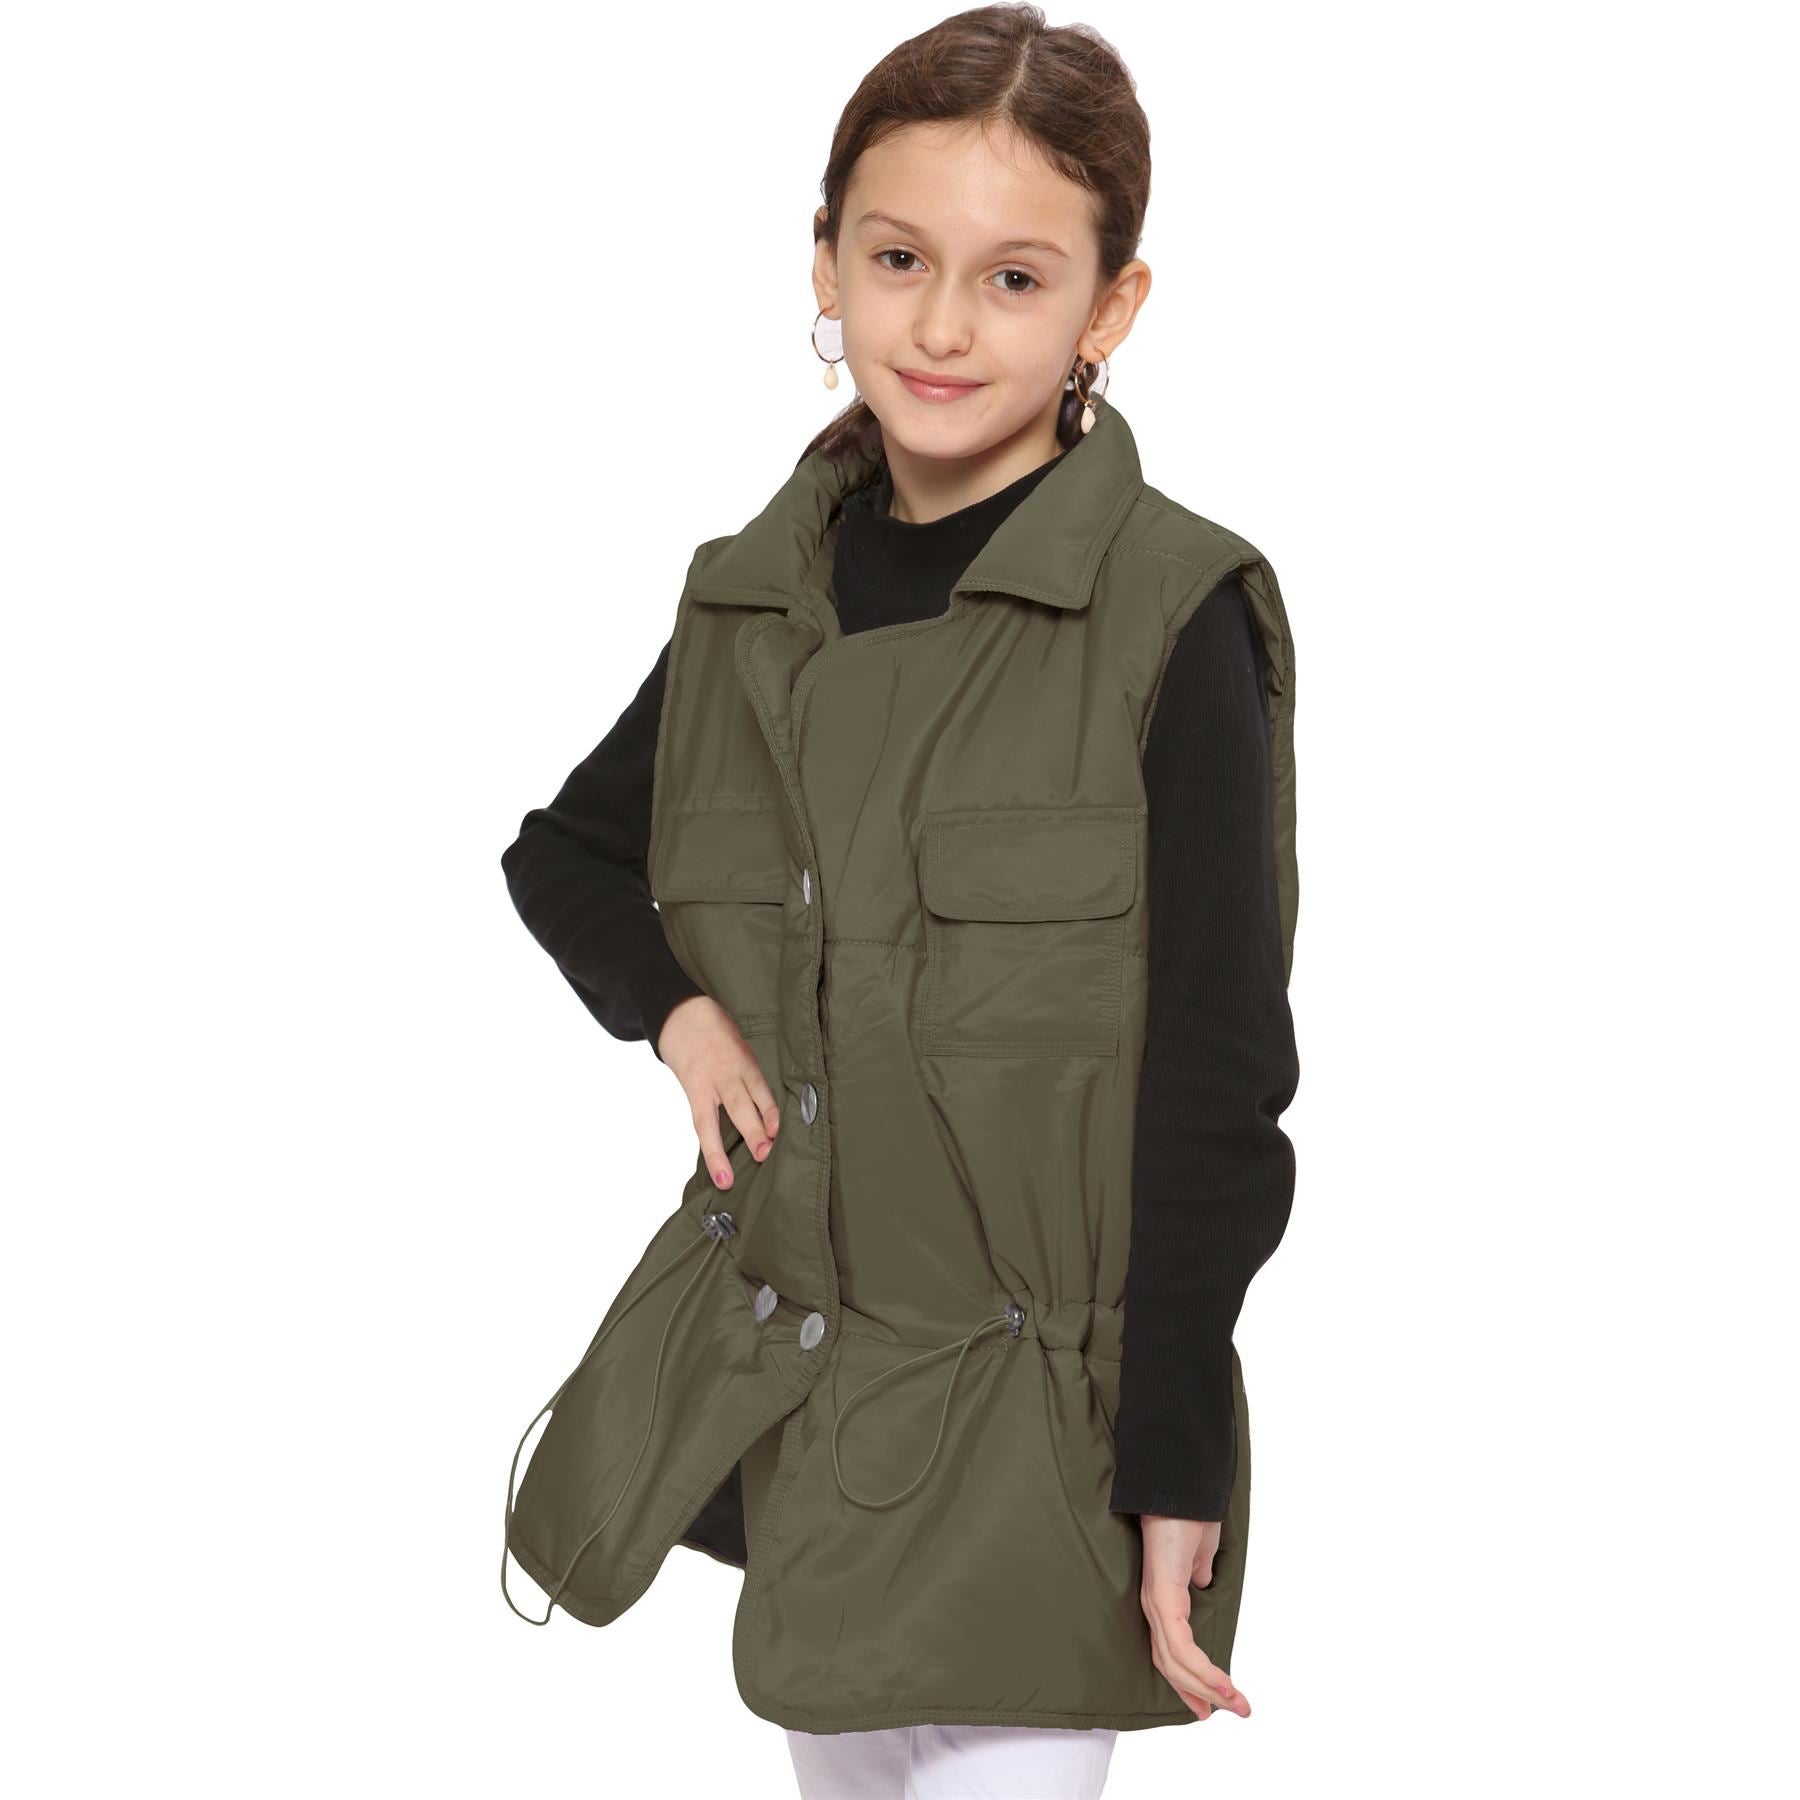 Kids Girls Khaki Oversized Style Sleeveless Jacket